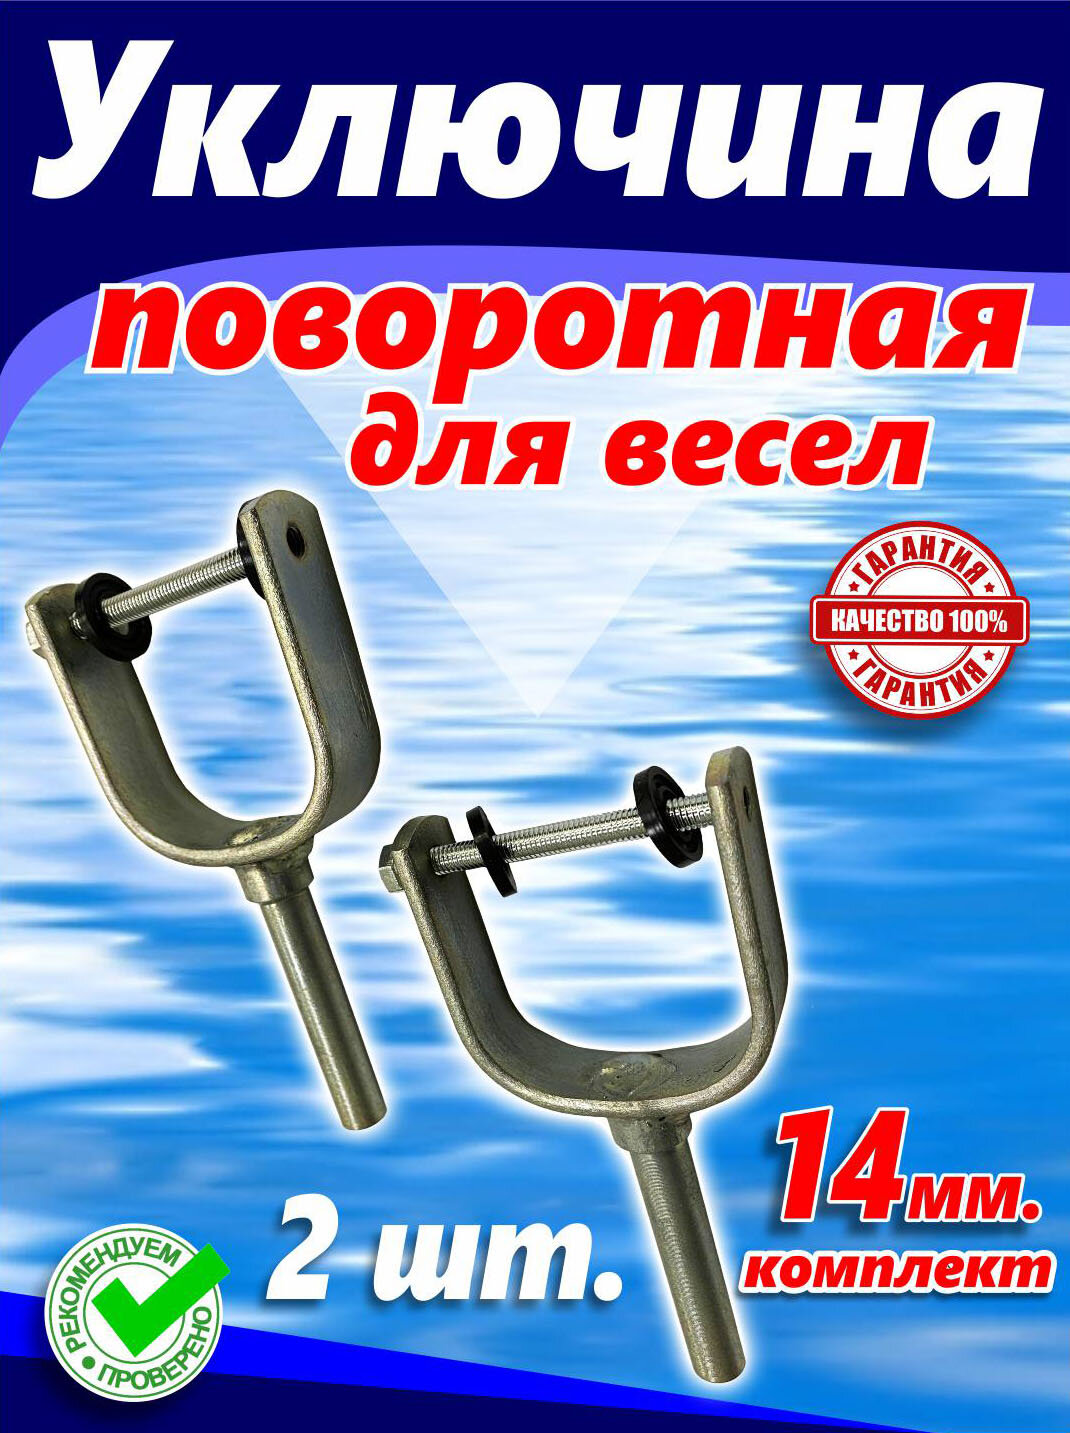 Уключина для весла (14 мм, к лодкам - Пелла, Казанка, Прогресс и т. д, комплект - 2 шт.)